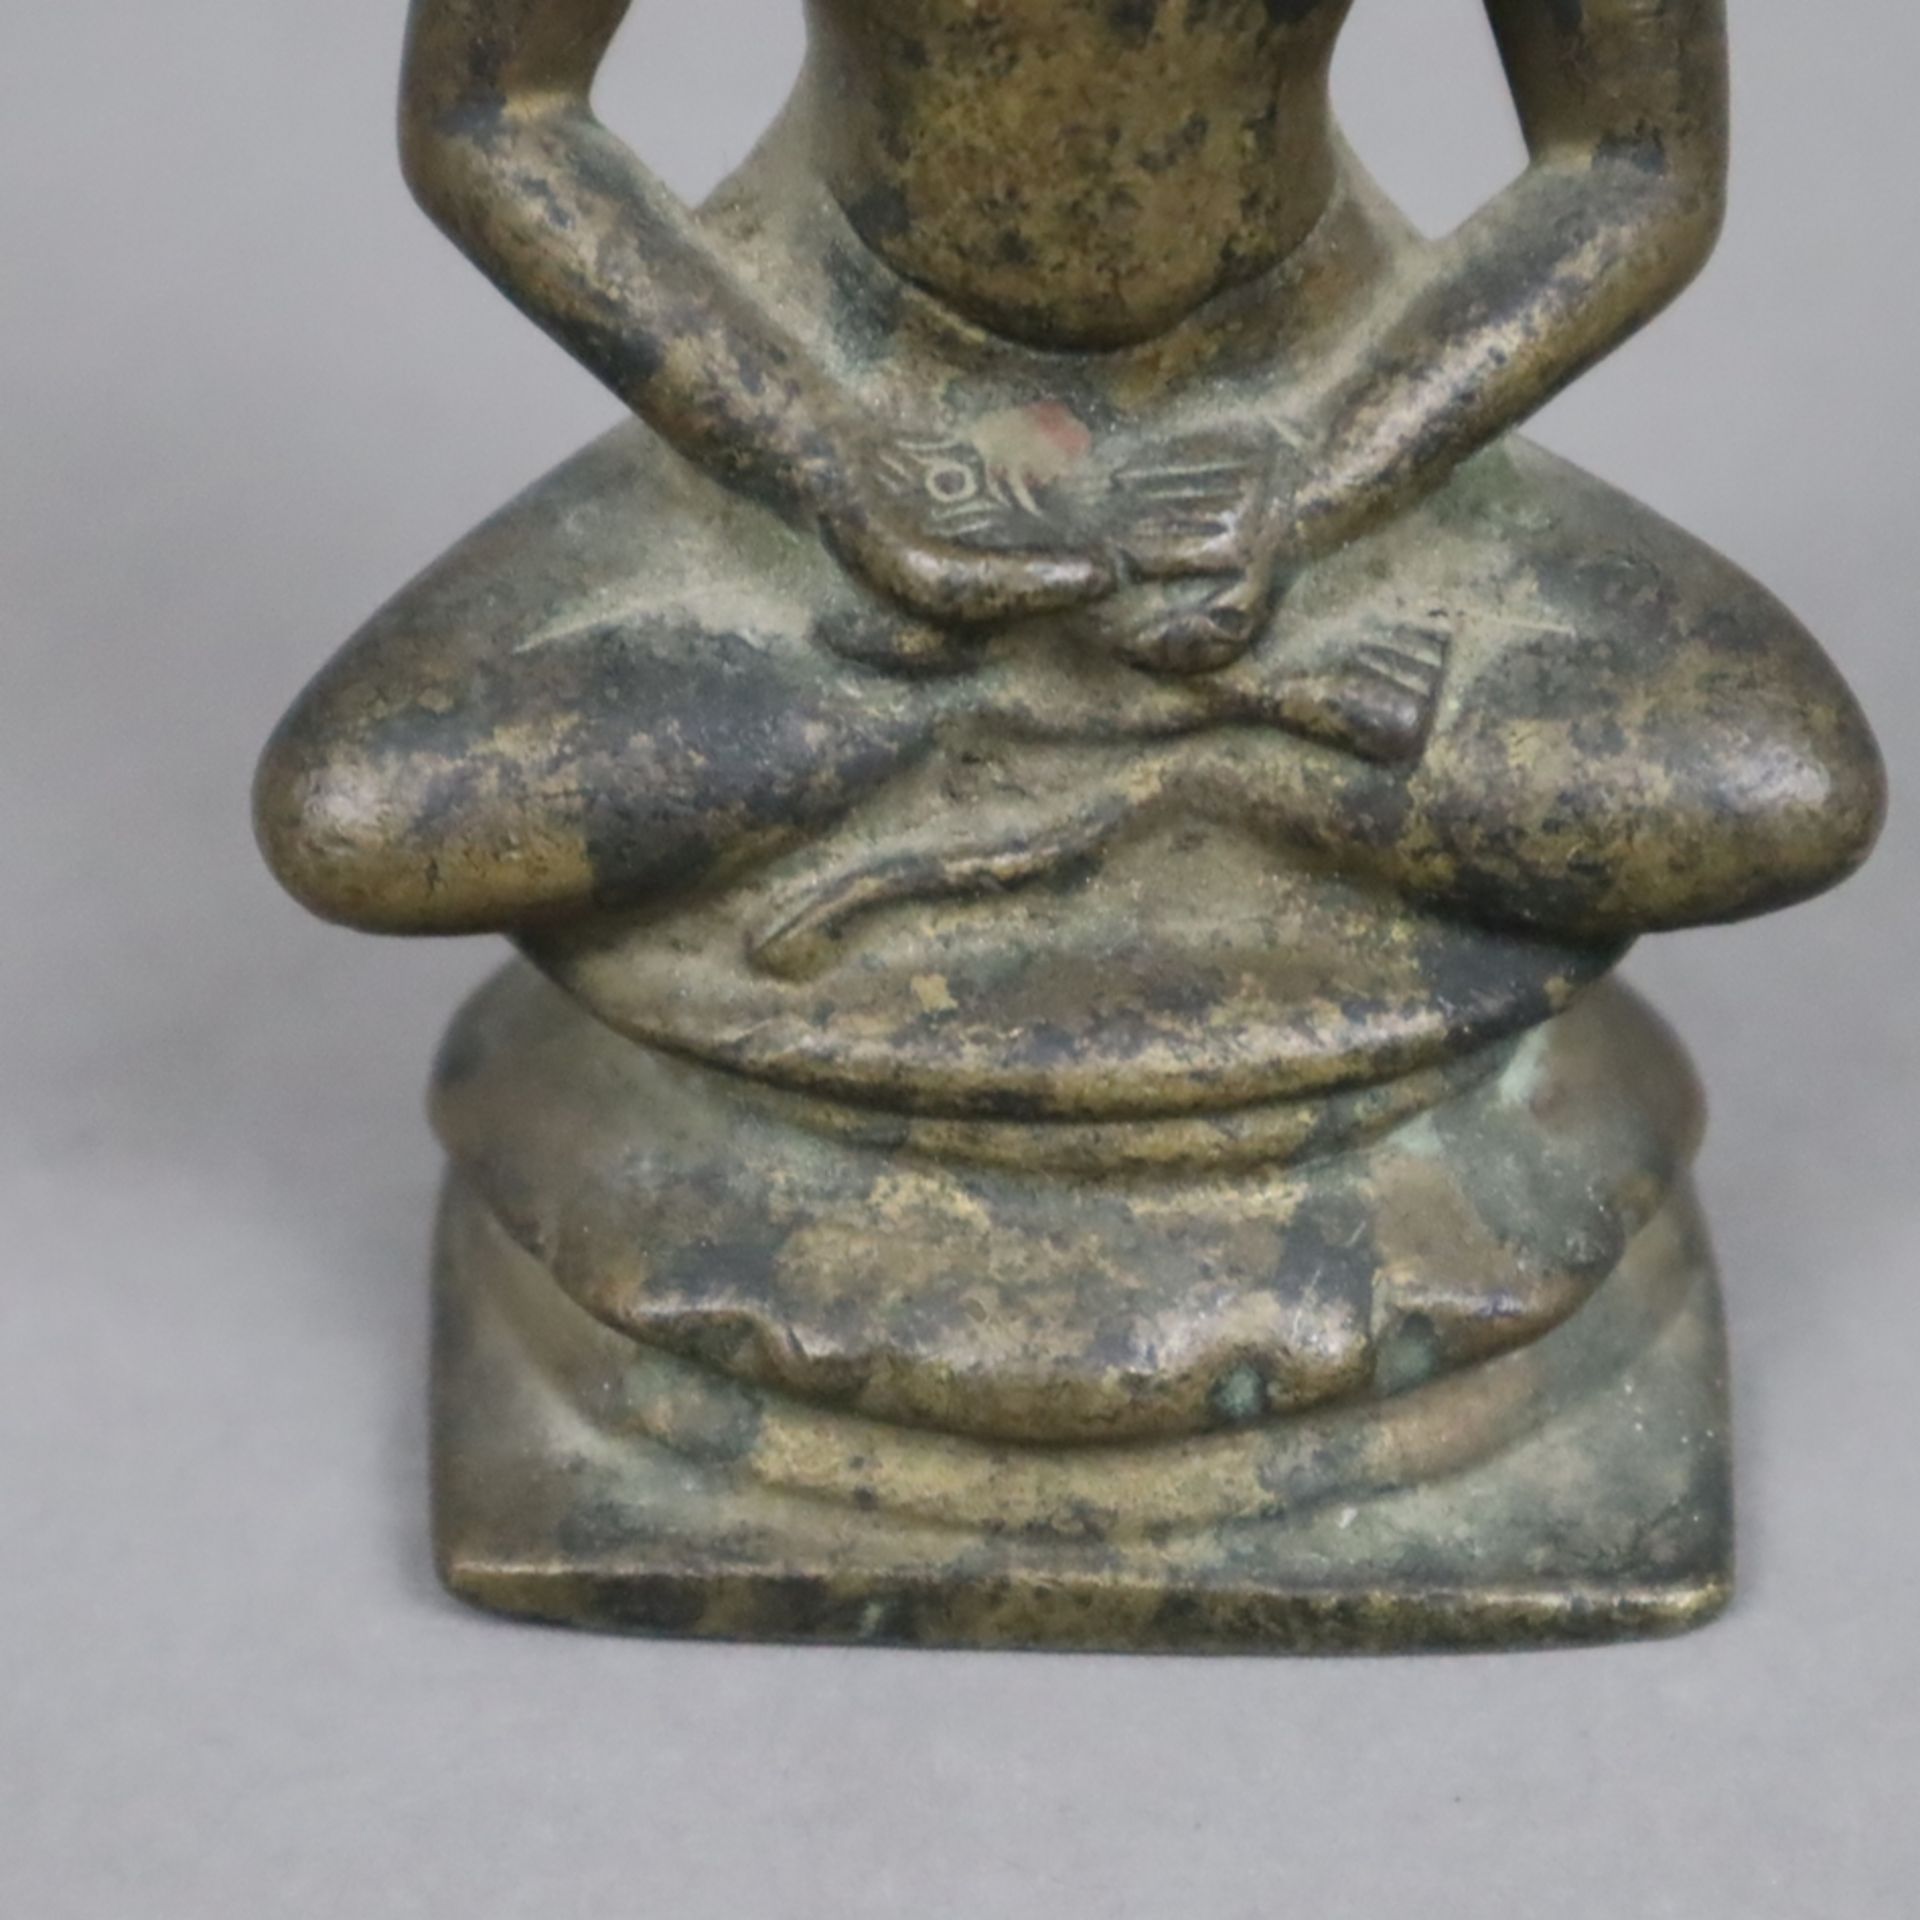 Erleuchteter asketischer Mönch/ Buddha in Meditation - Indien, 19. Jh., Bronzefigur, H. ca. 9,5 cm, - Bild 3 aus 6